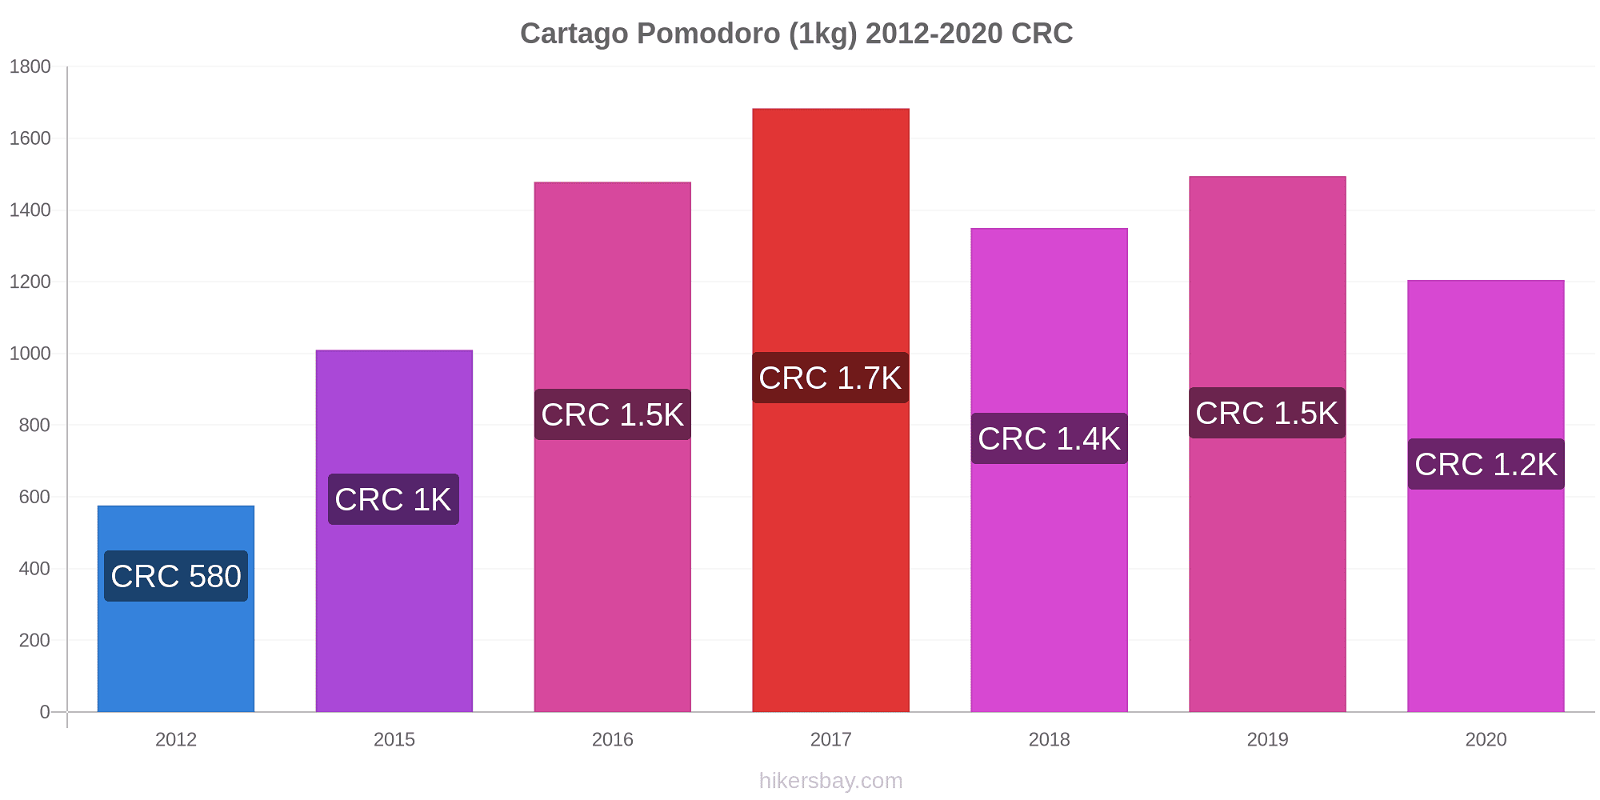 Cartago variazioni di prezzo Pomodoro (1kg) hikersbay.com